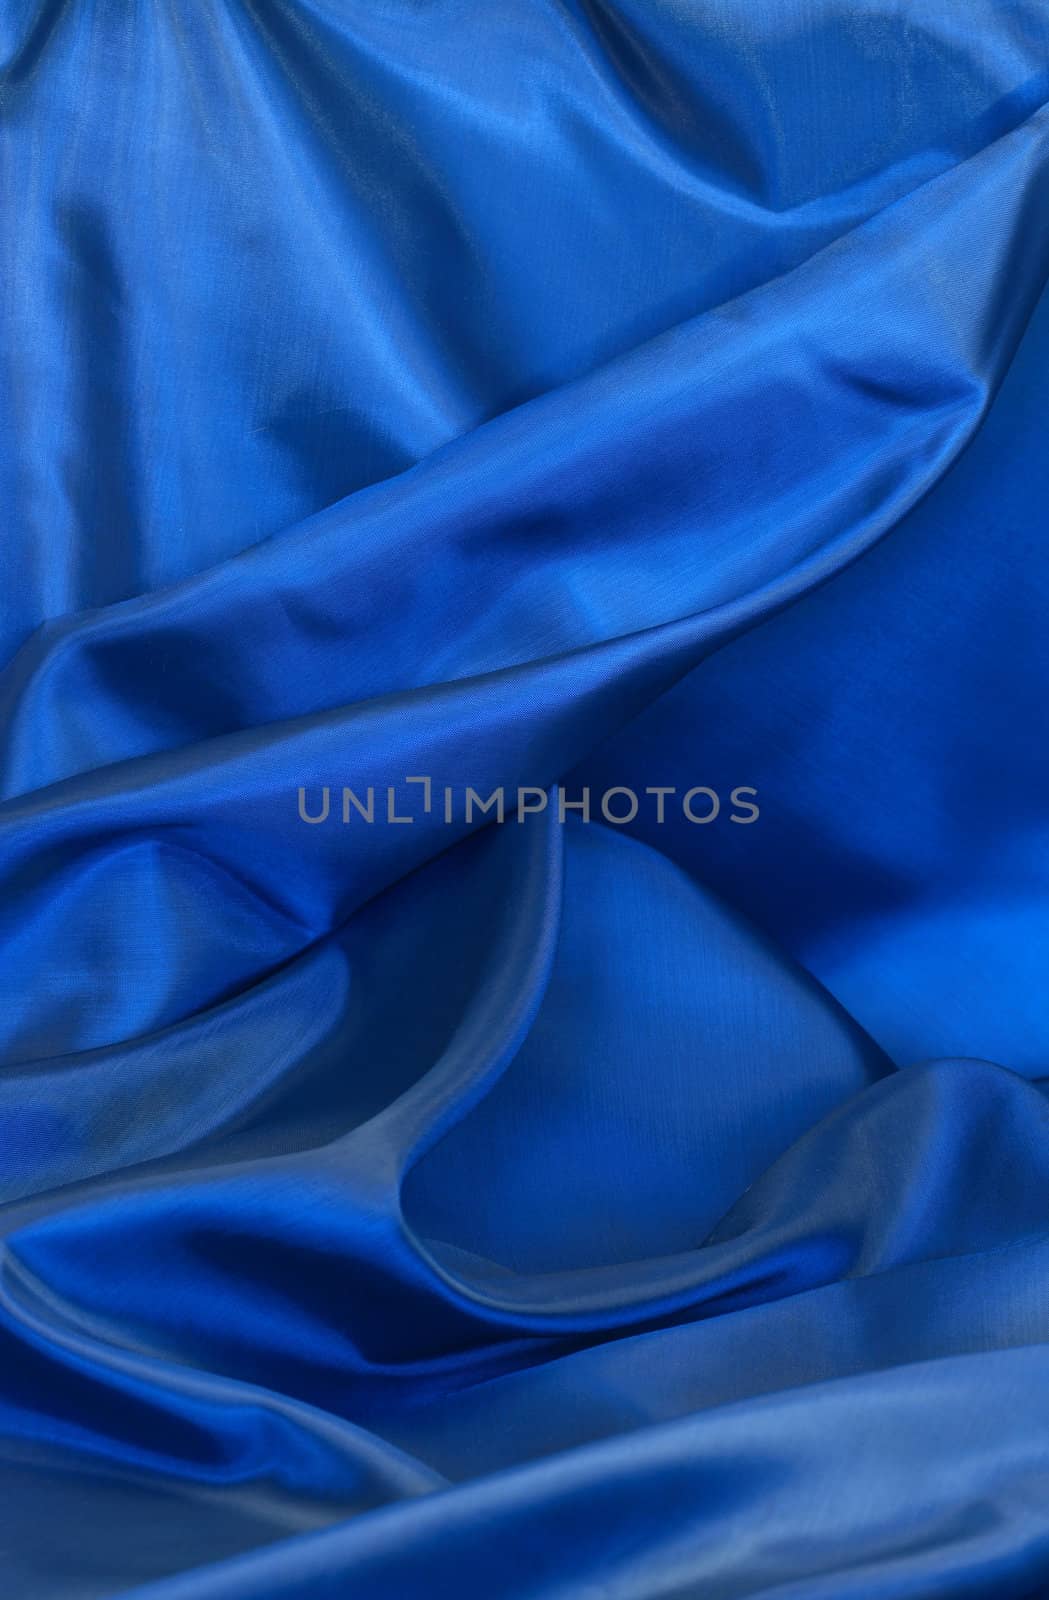 Blue Cloth Textured by kvkirillov